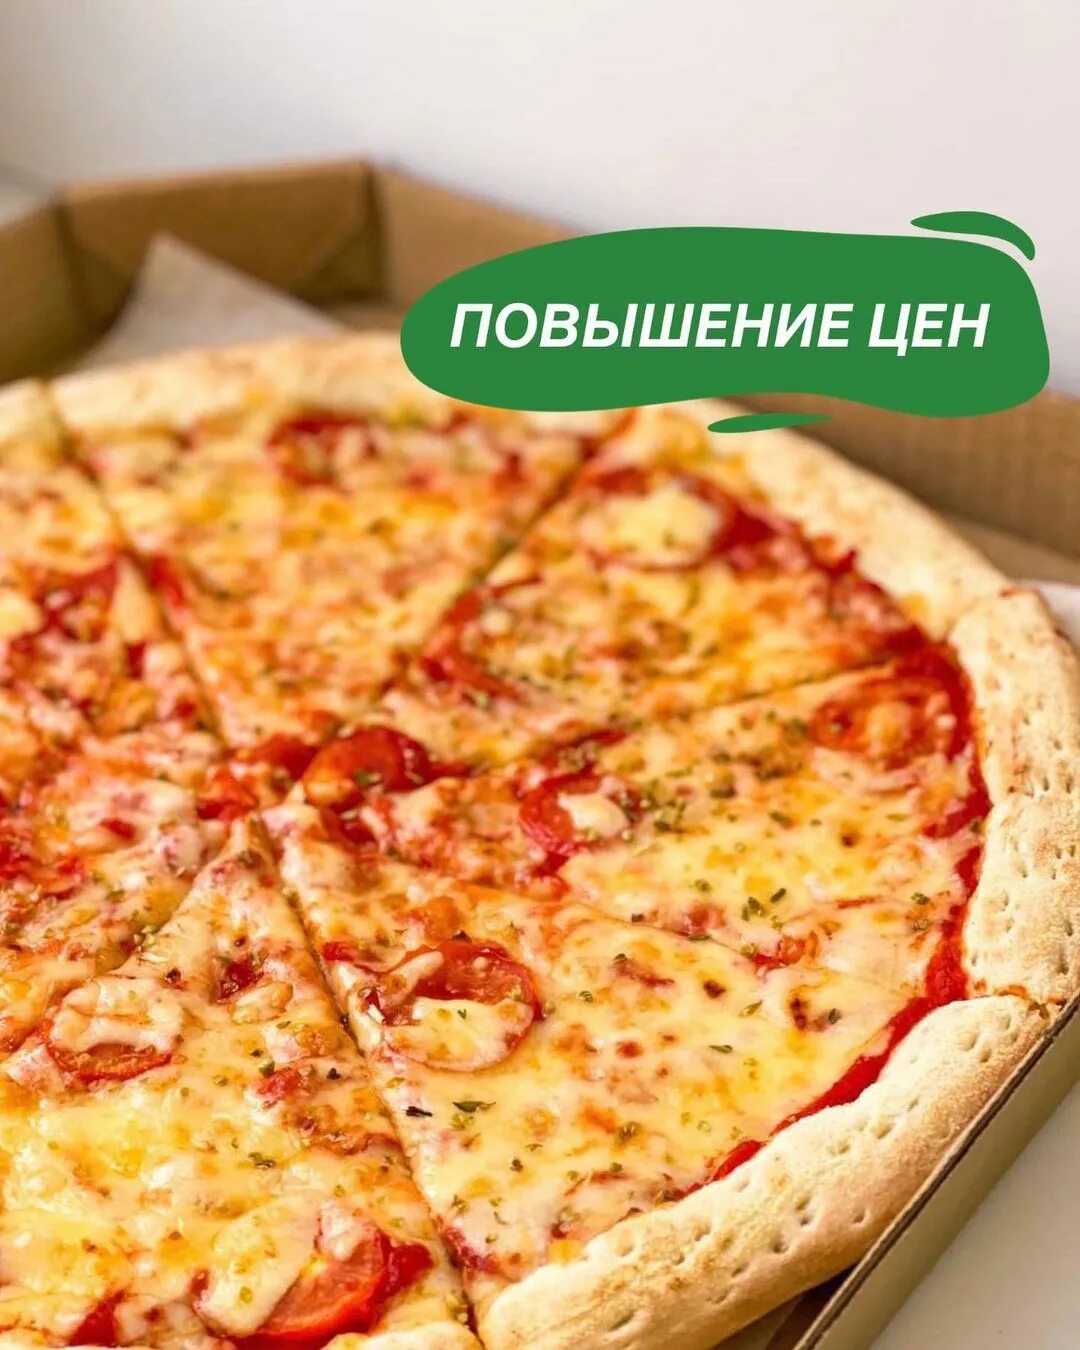 субито пицца красноярск рецепт фото 119